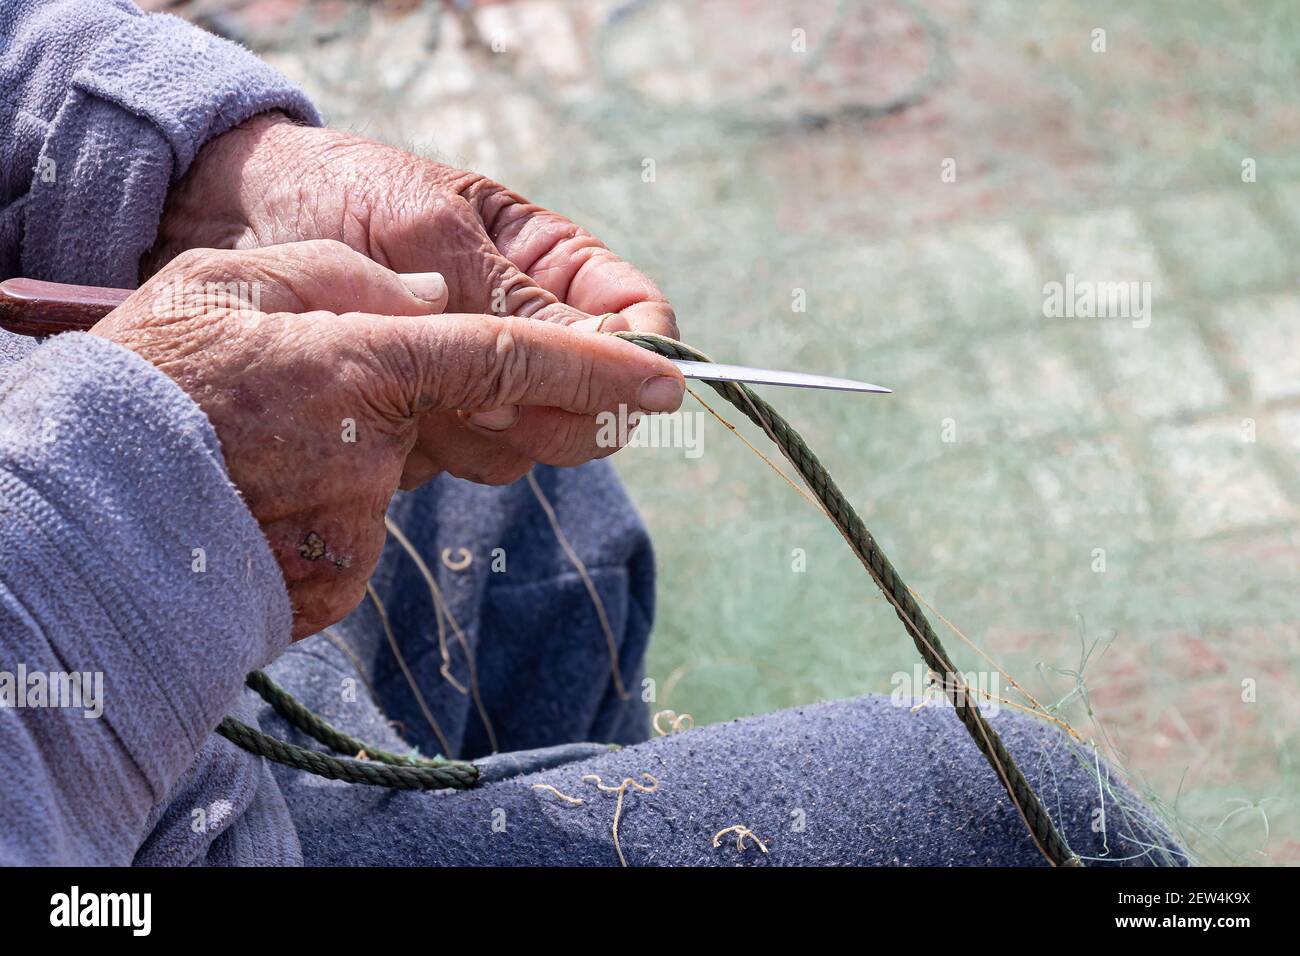 Hände des Fischers, die ein Netz mit einem Messer reparieren Stockfoto